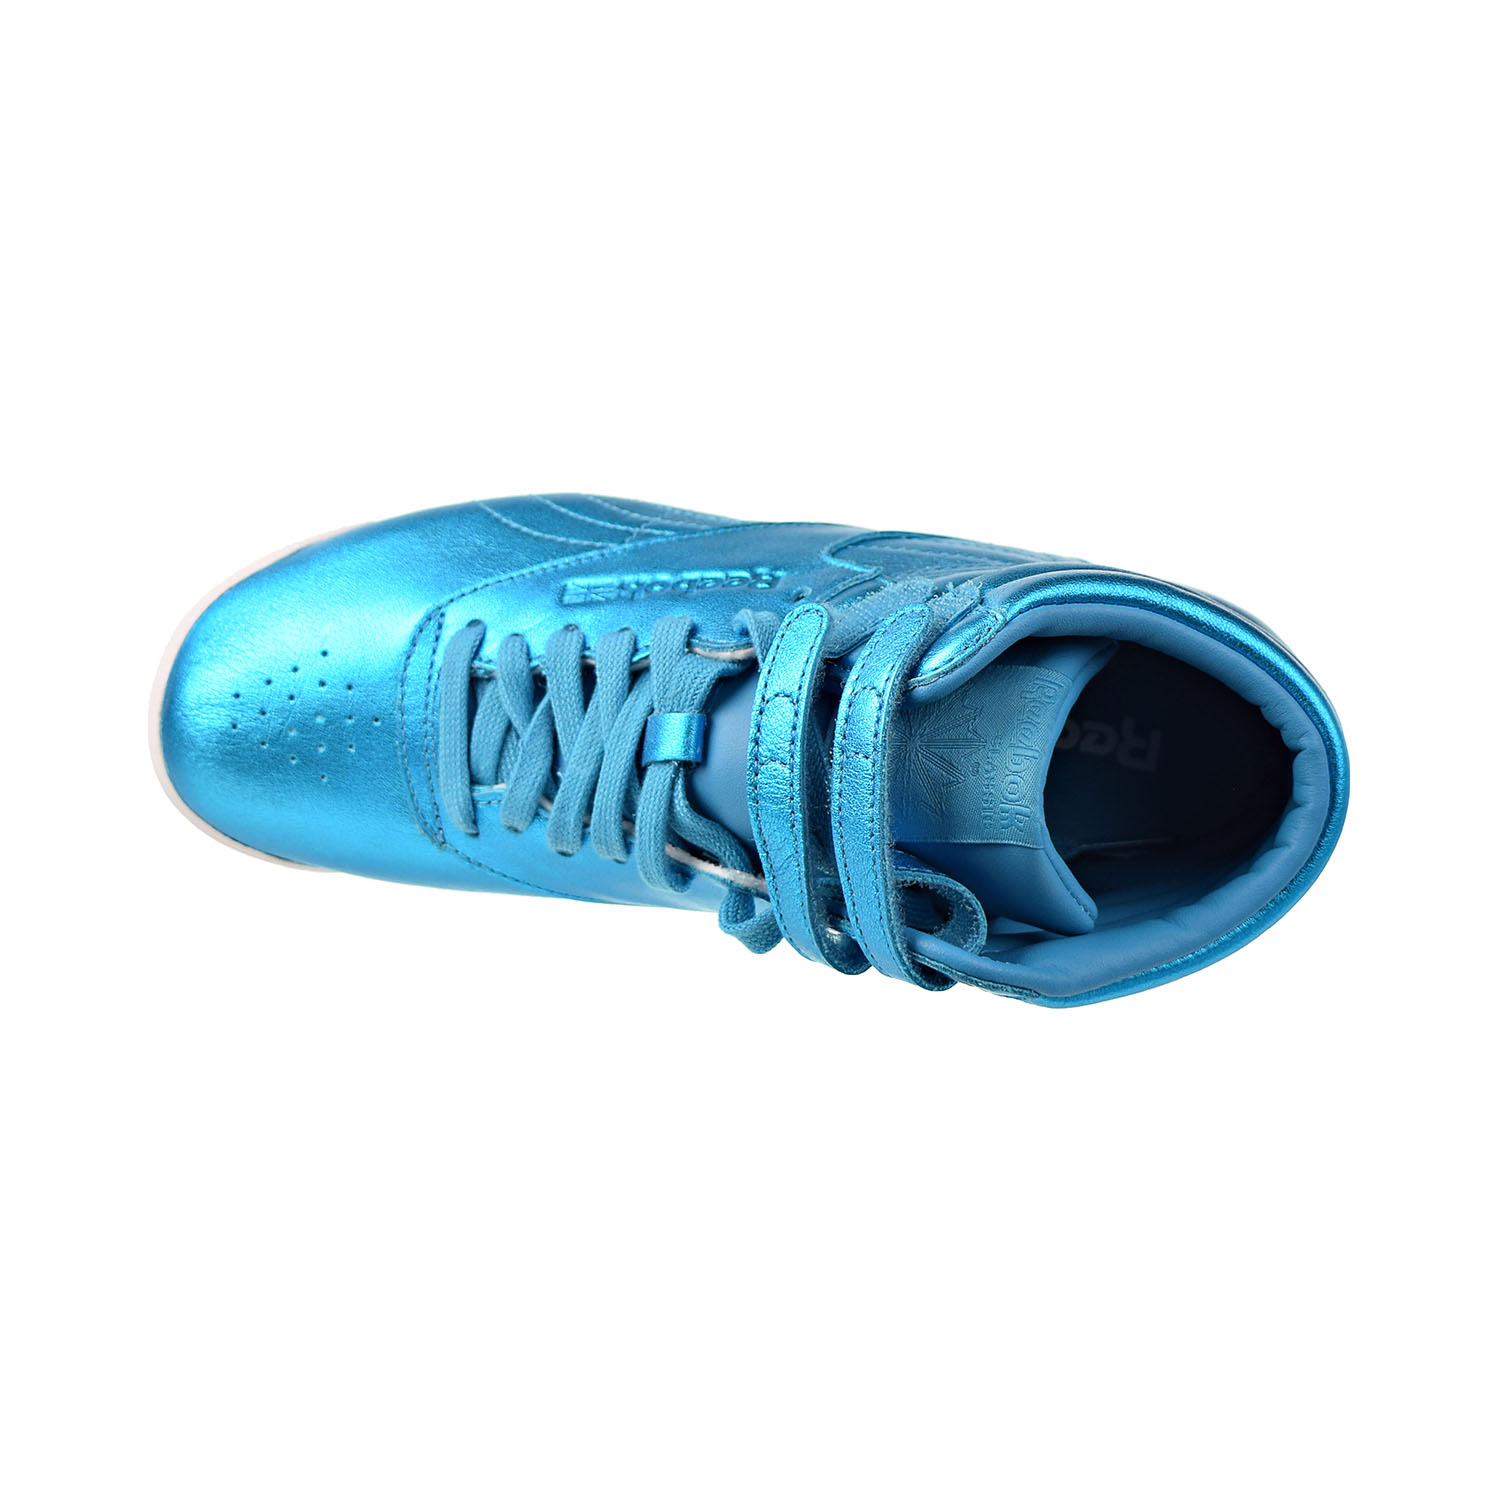 Reebok Freestyle Hi Metallic Women Shoes Feather Blue/White  cn0959